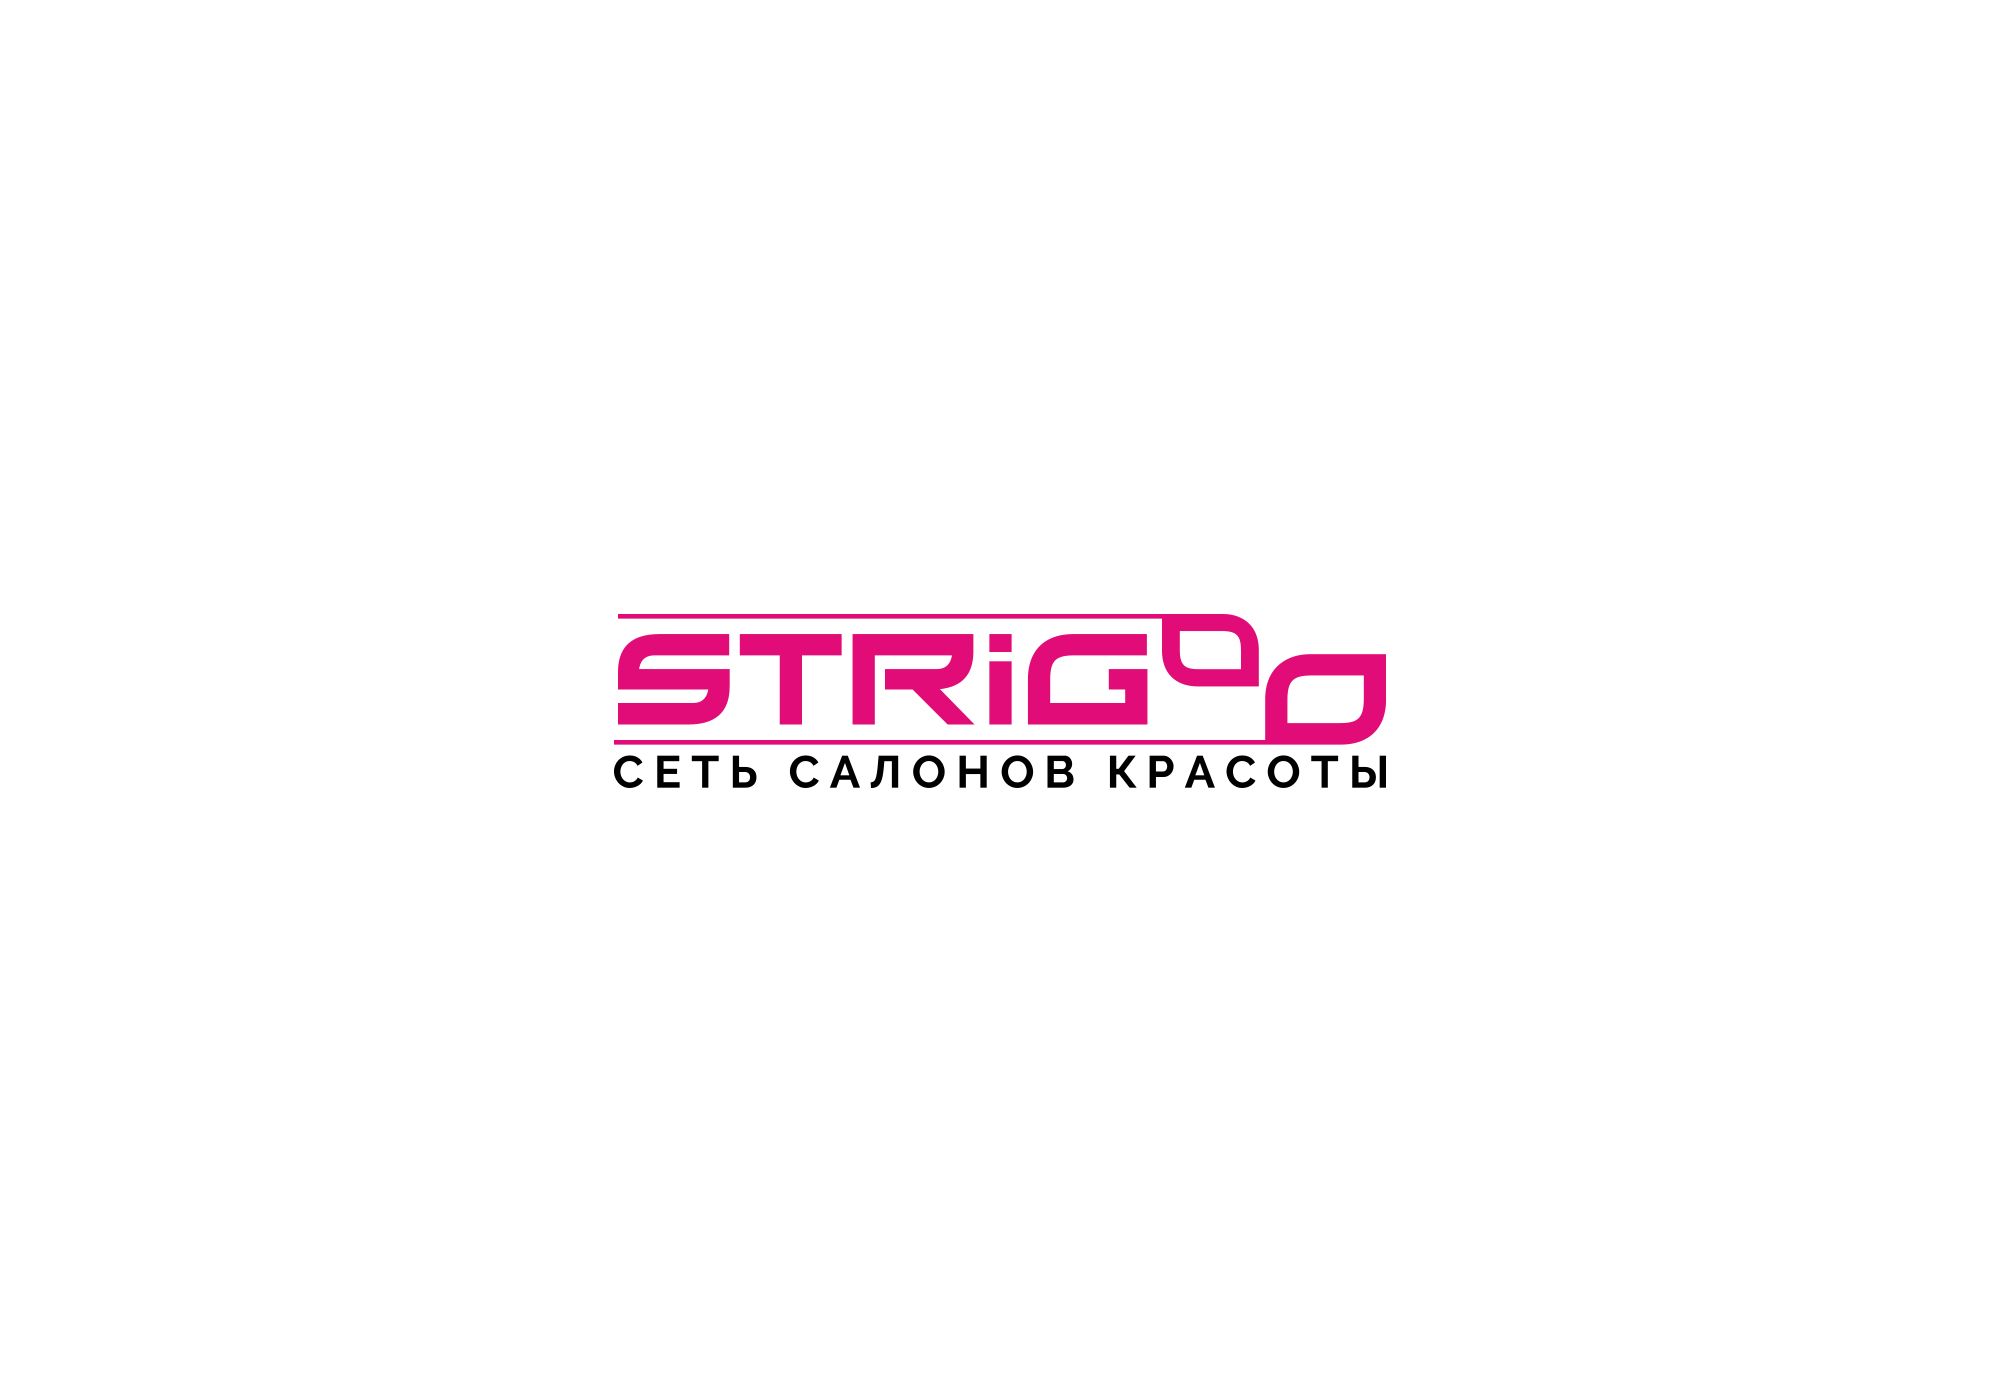 Лого и фирменный стиль для Strigoo - дизайнер Ninpo